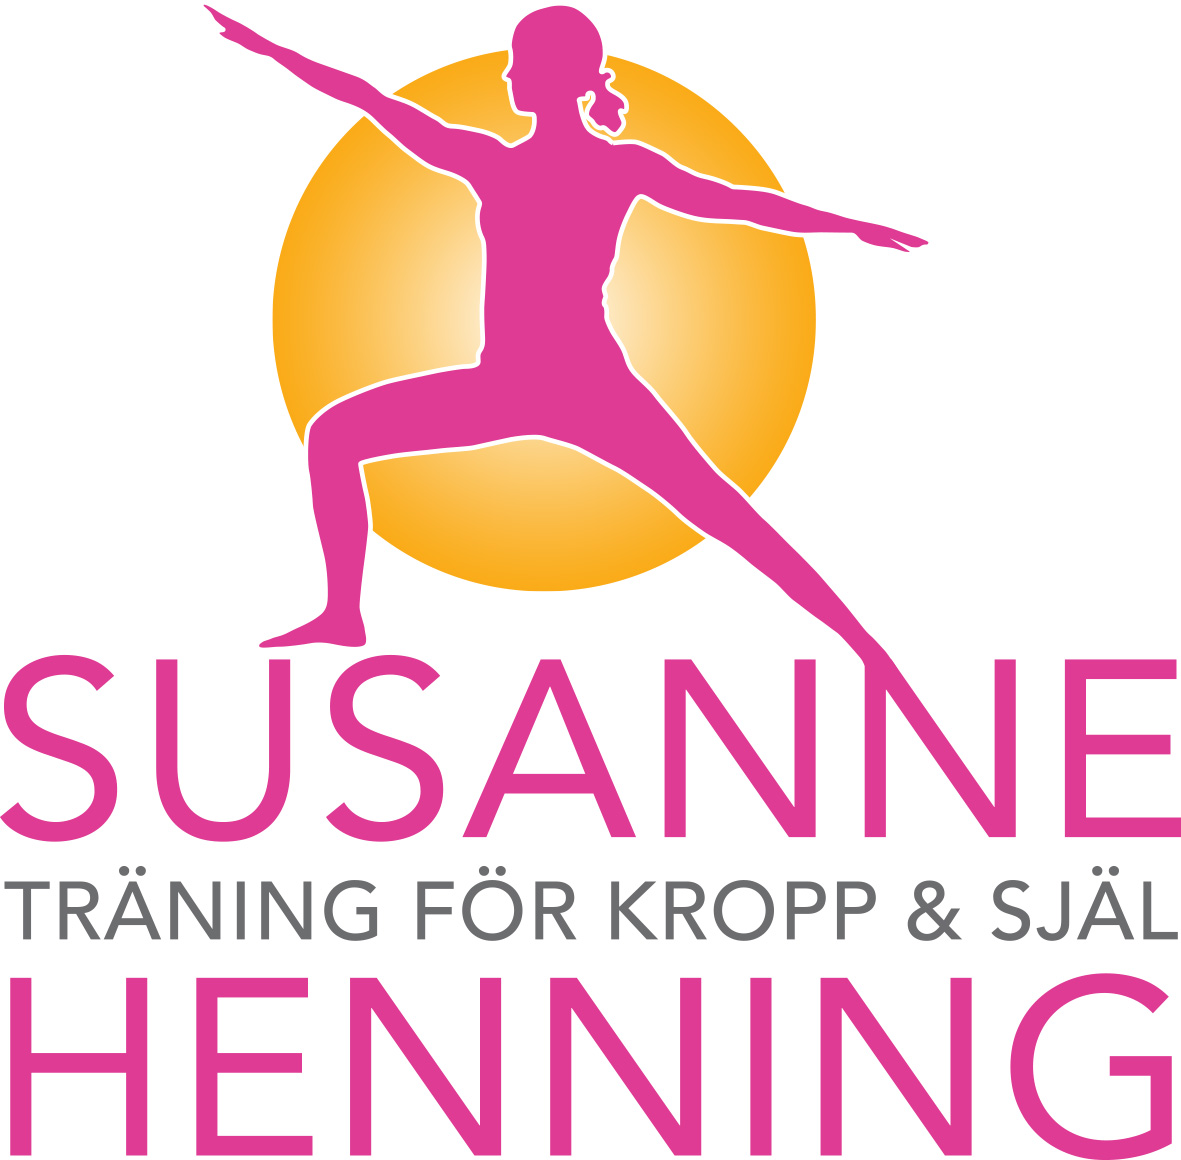 Susanne Henning - Träning för kropp & själ